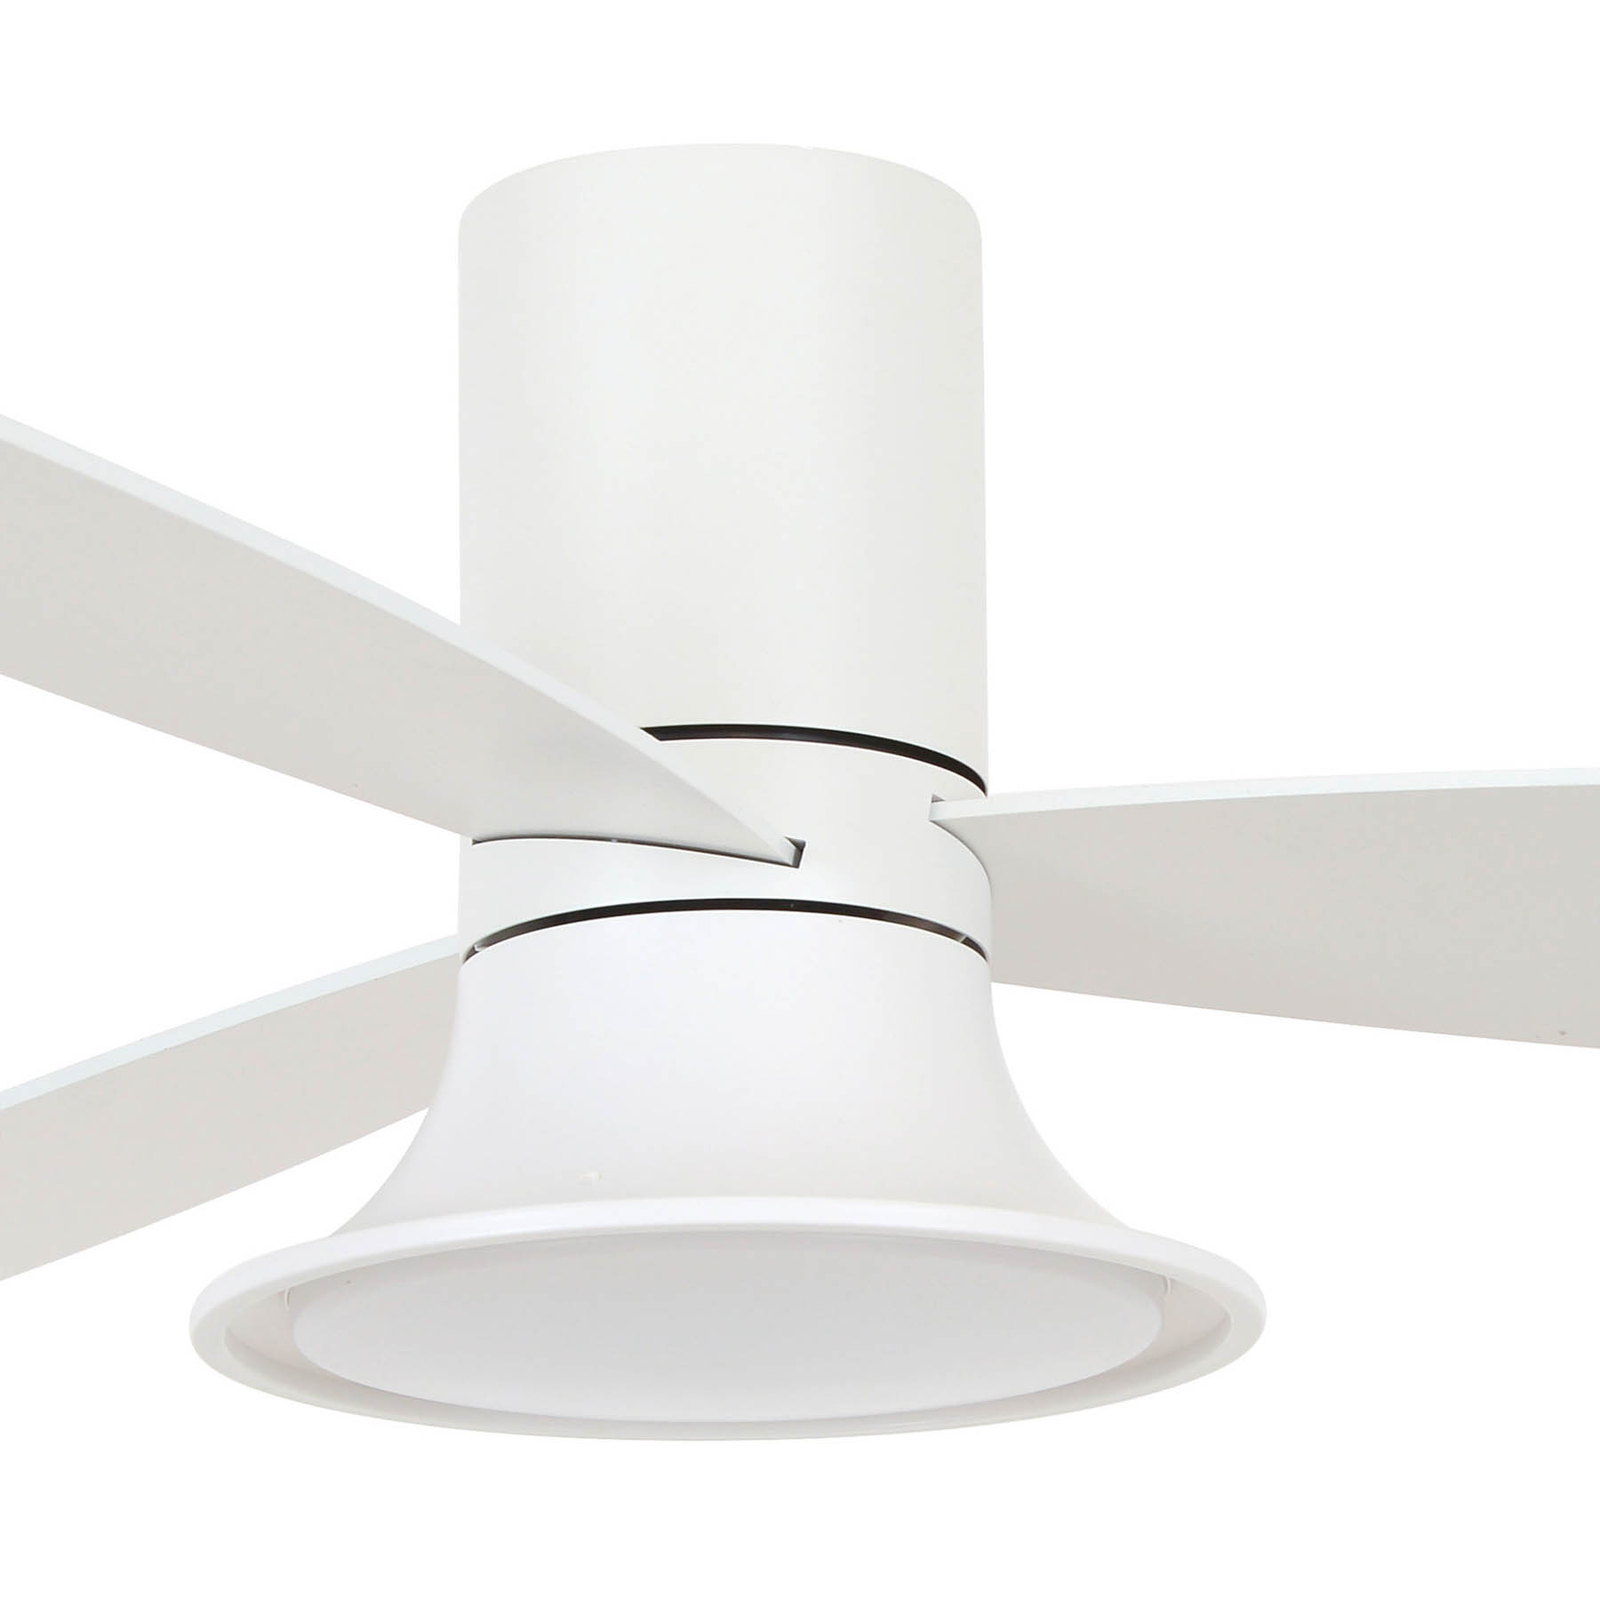 Beacon ceiling fan with light Flusso white Ø 132 cm quiet